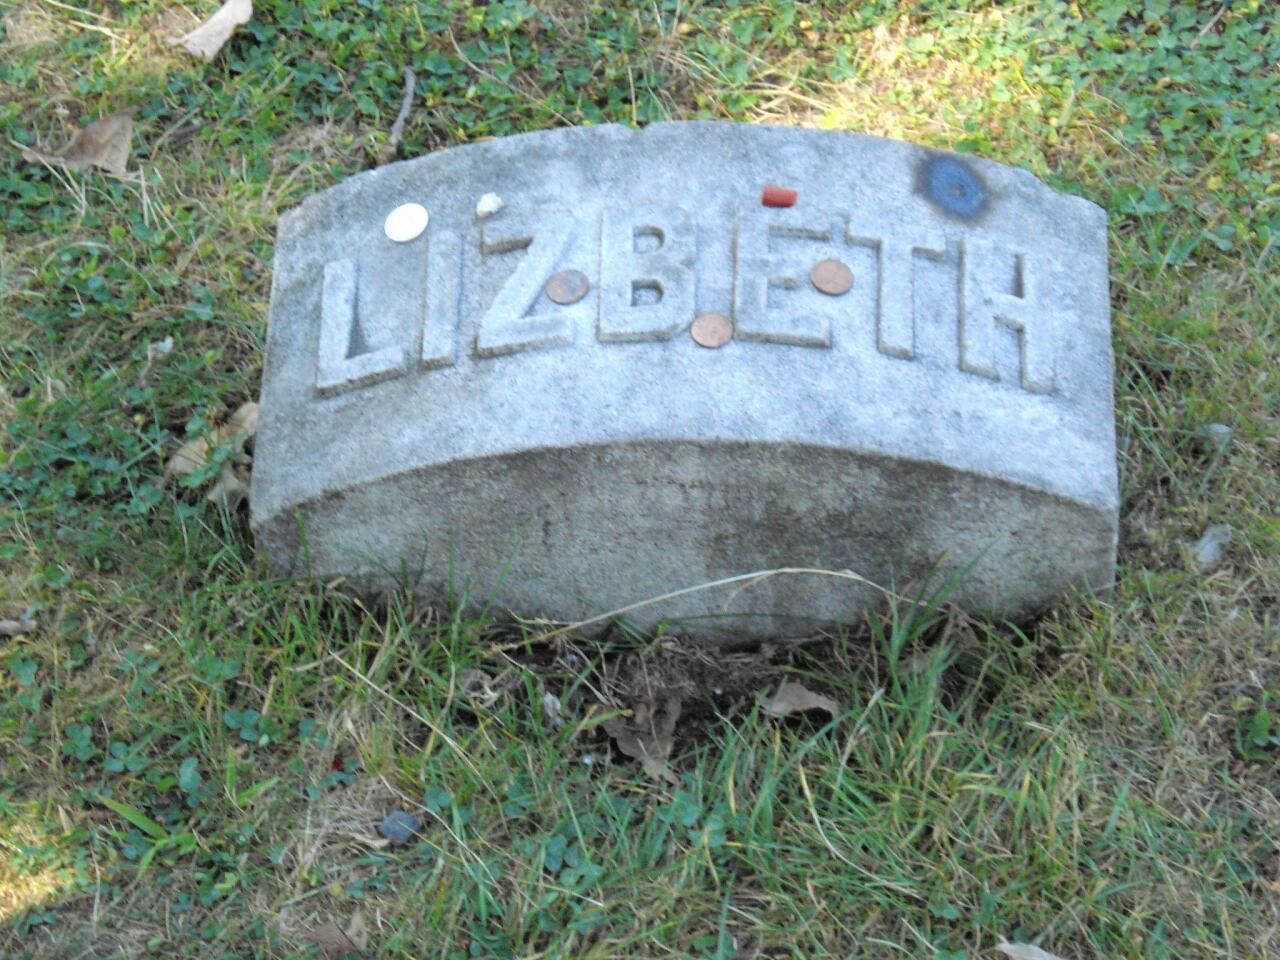 Lizzie's stone